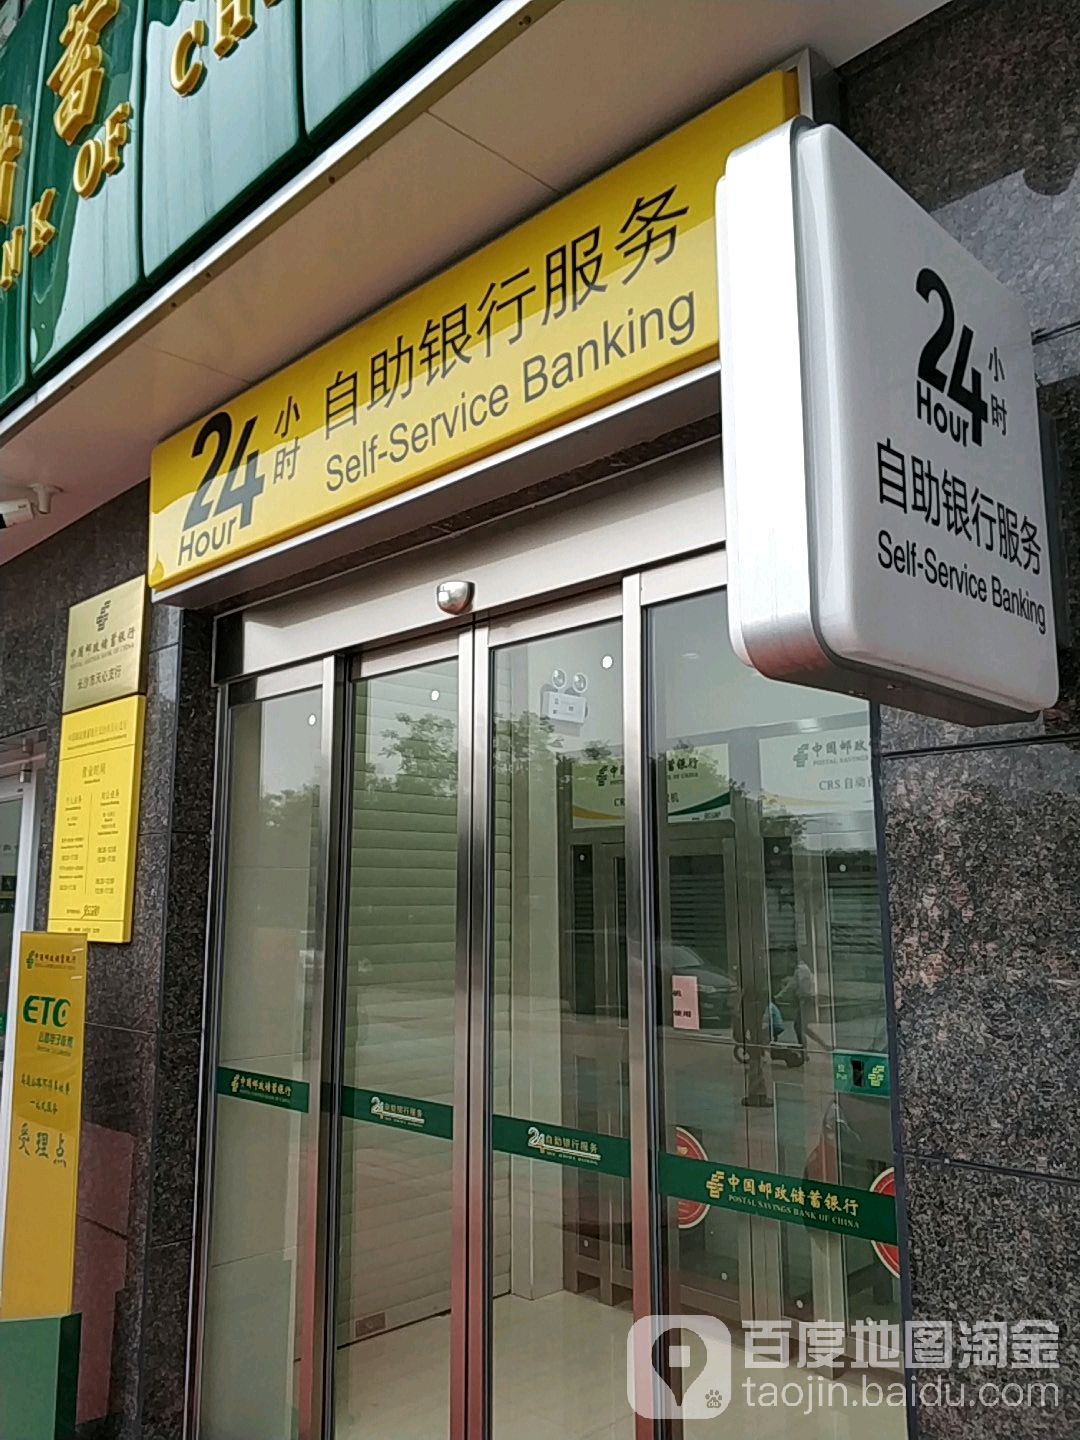 中国邮政储蓄建行24小时自助银行(长沙市天心支行)